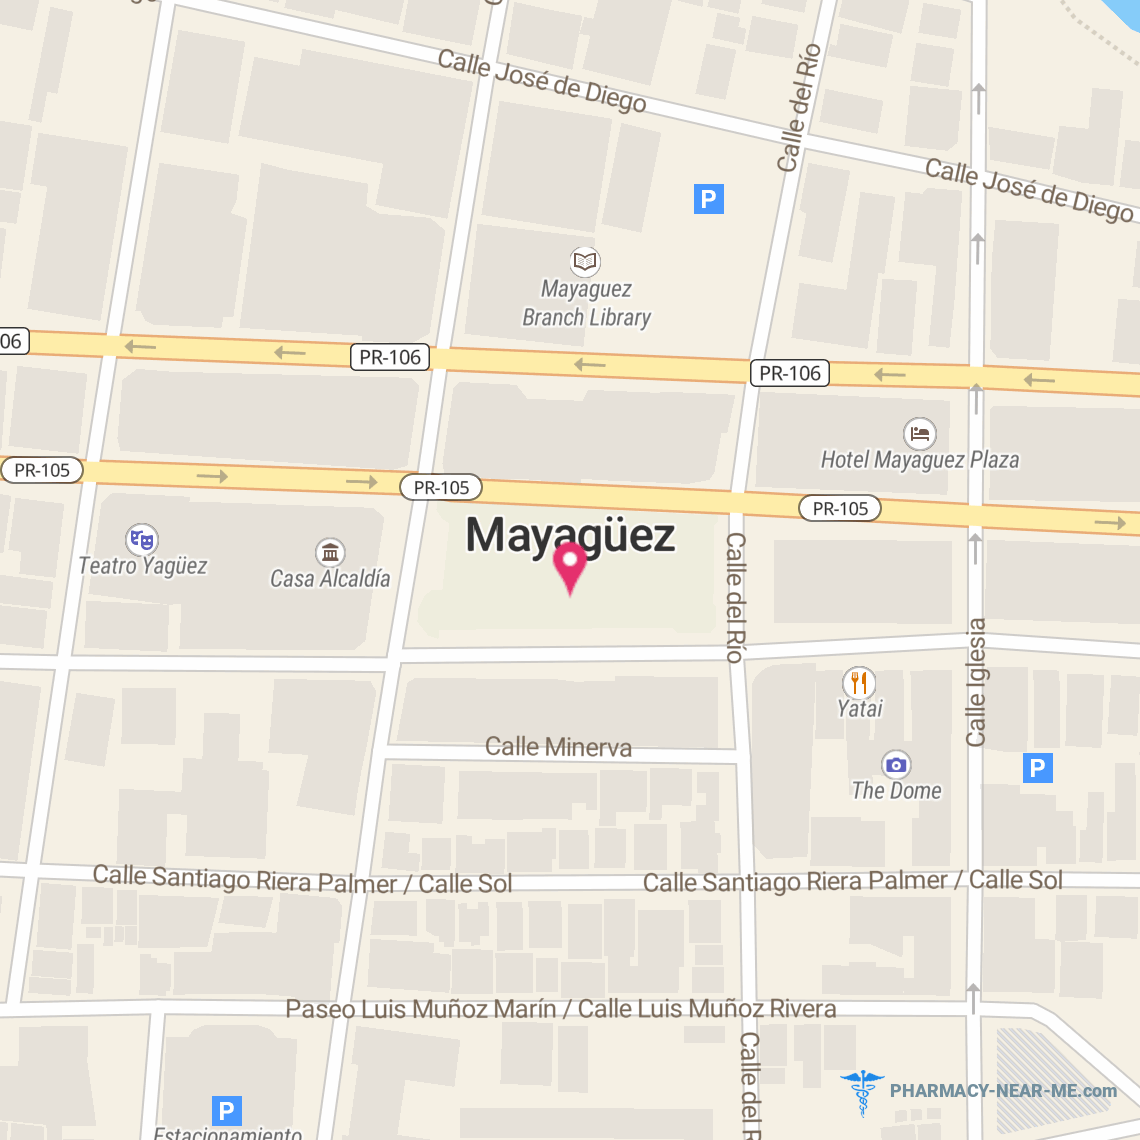 FARMACIA AJL LLC - Pharmacy Hours, Phone, Reviews & Information: Mayagüez, PR